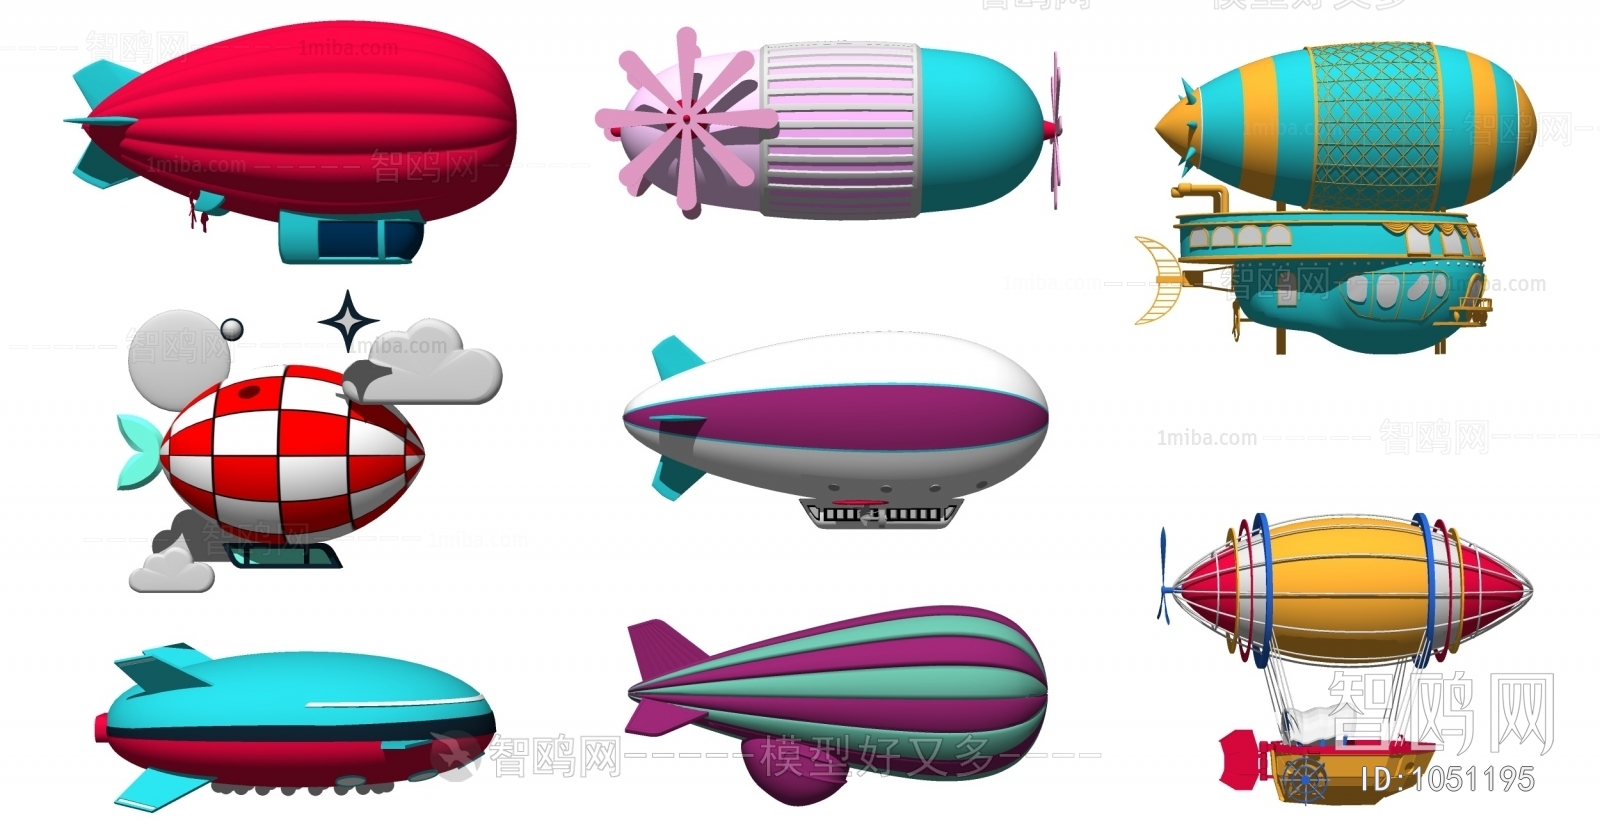 现代飞艇、热气球、游乐场设备